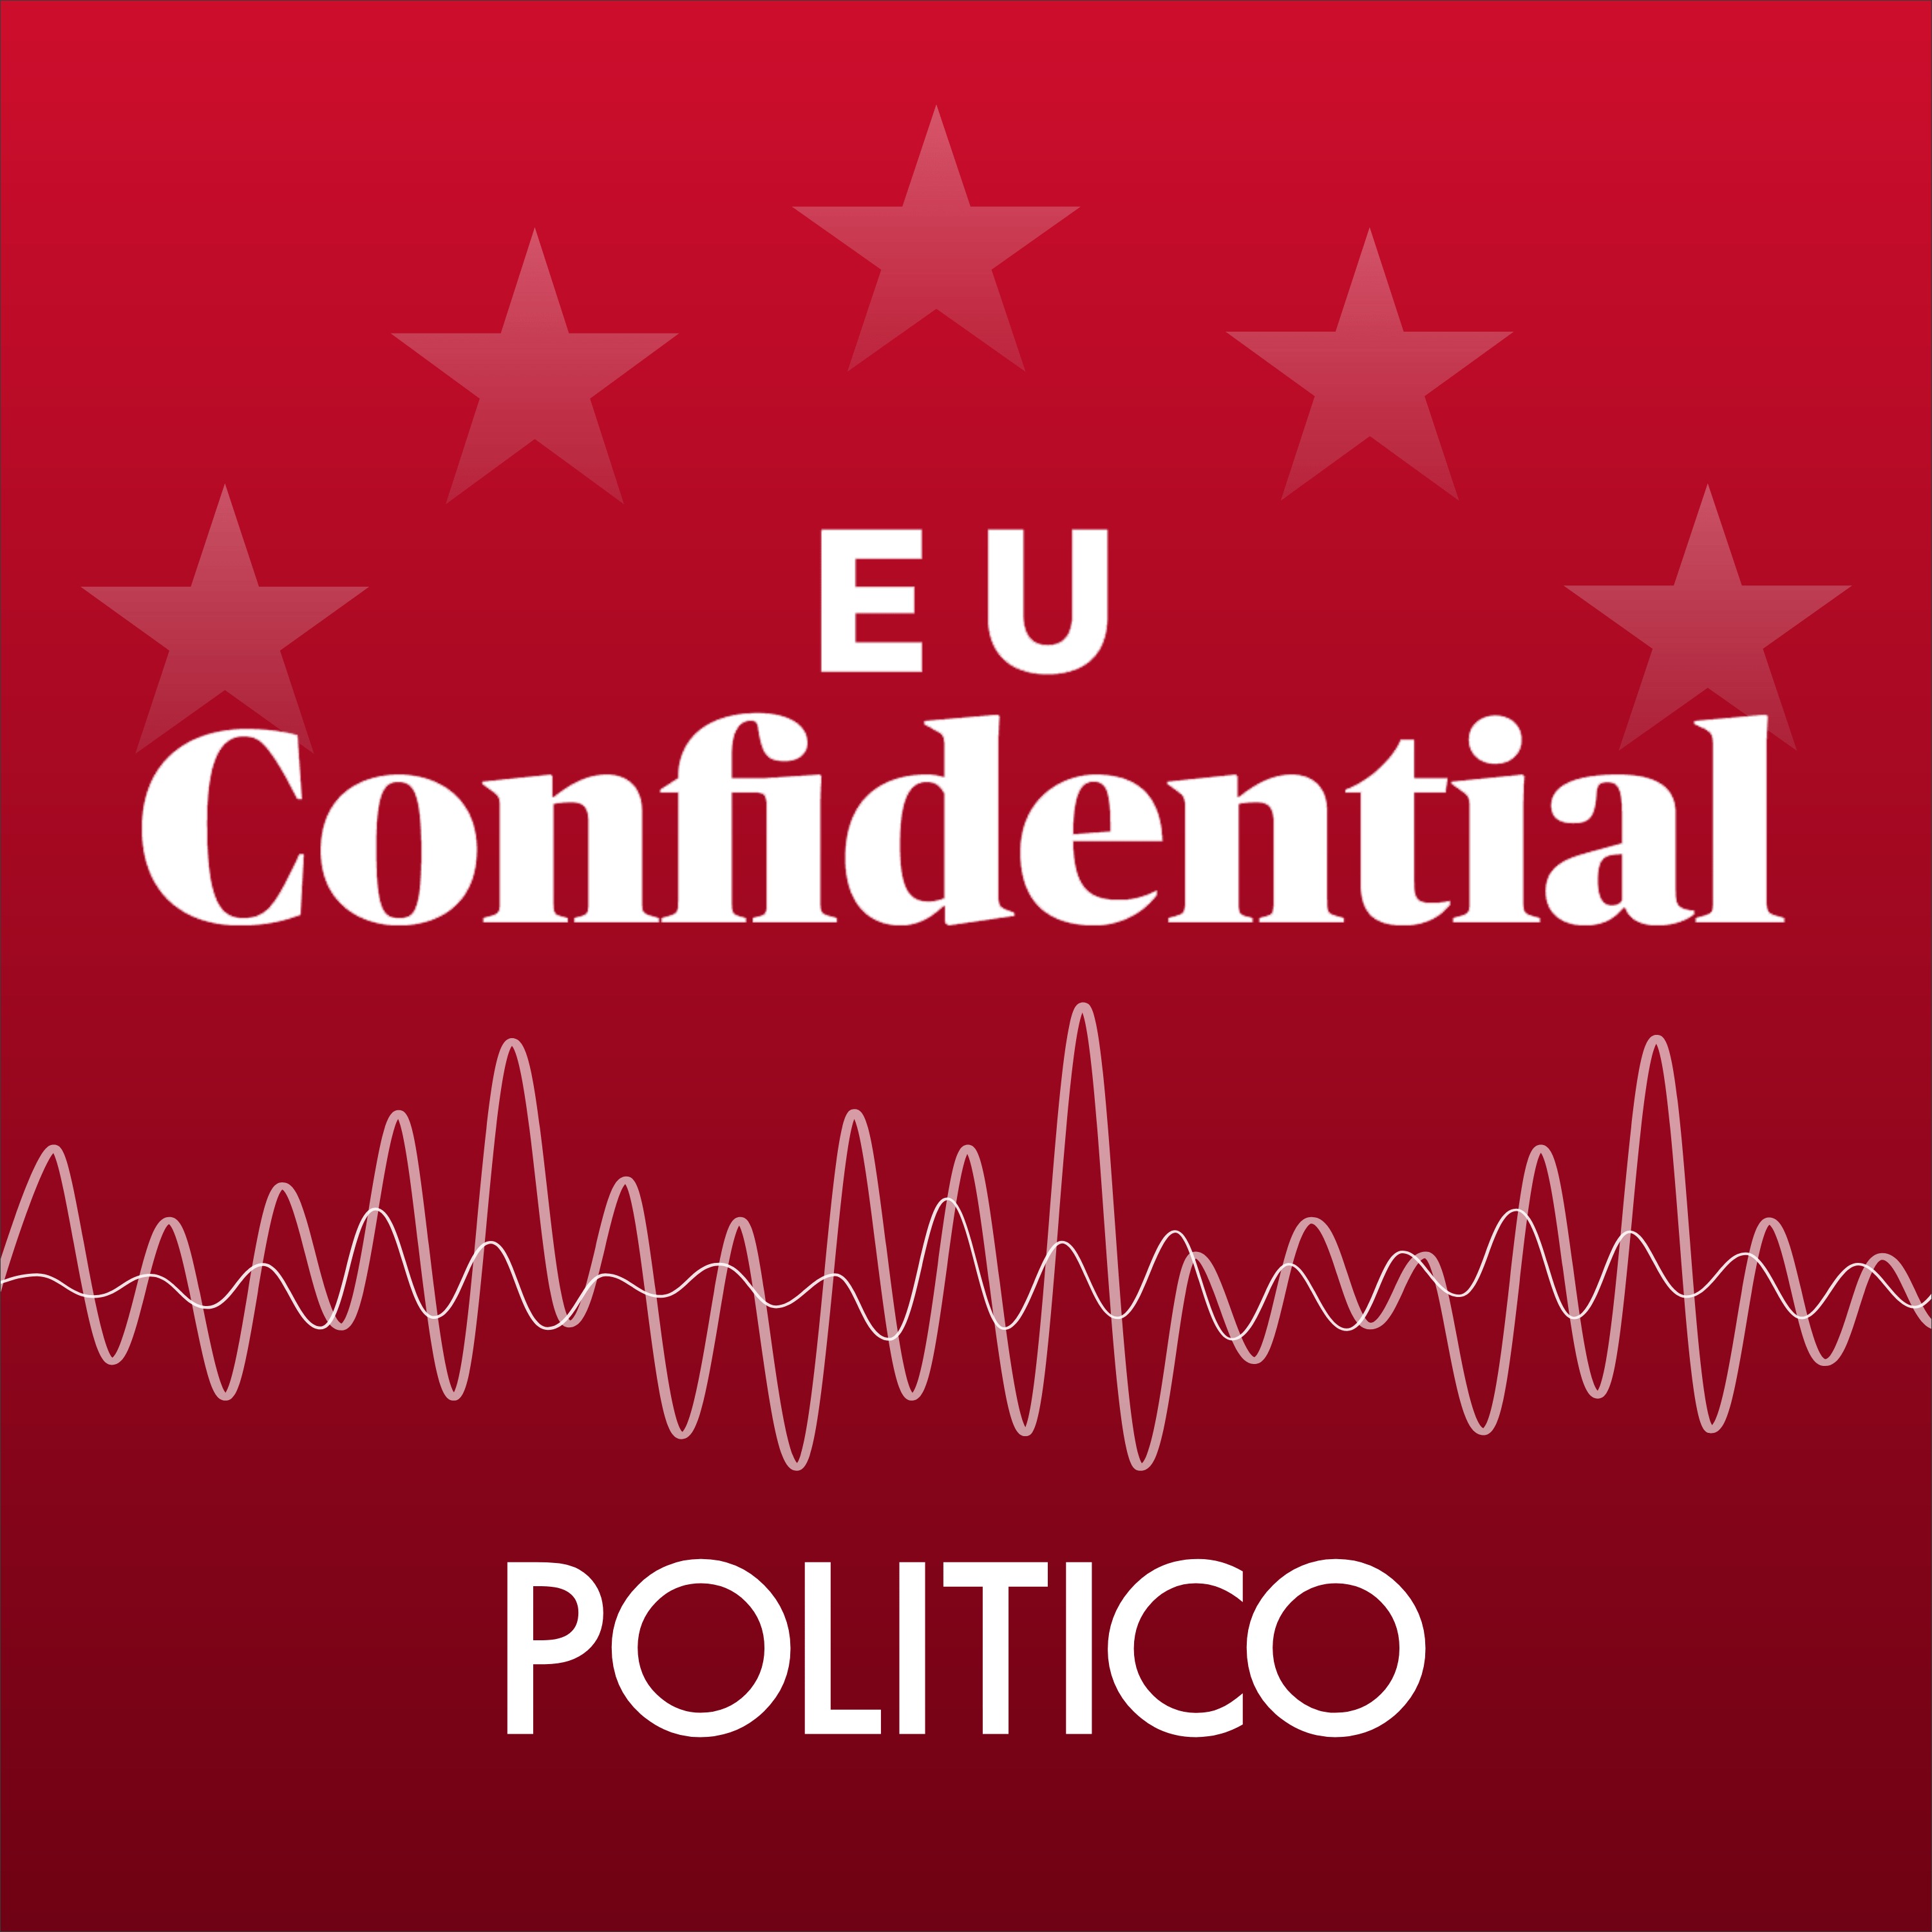 Austrian Foreign Minister Schallenberg: EU needs to rethink its enlargement approach